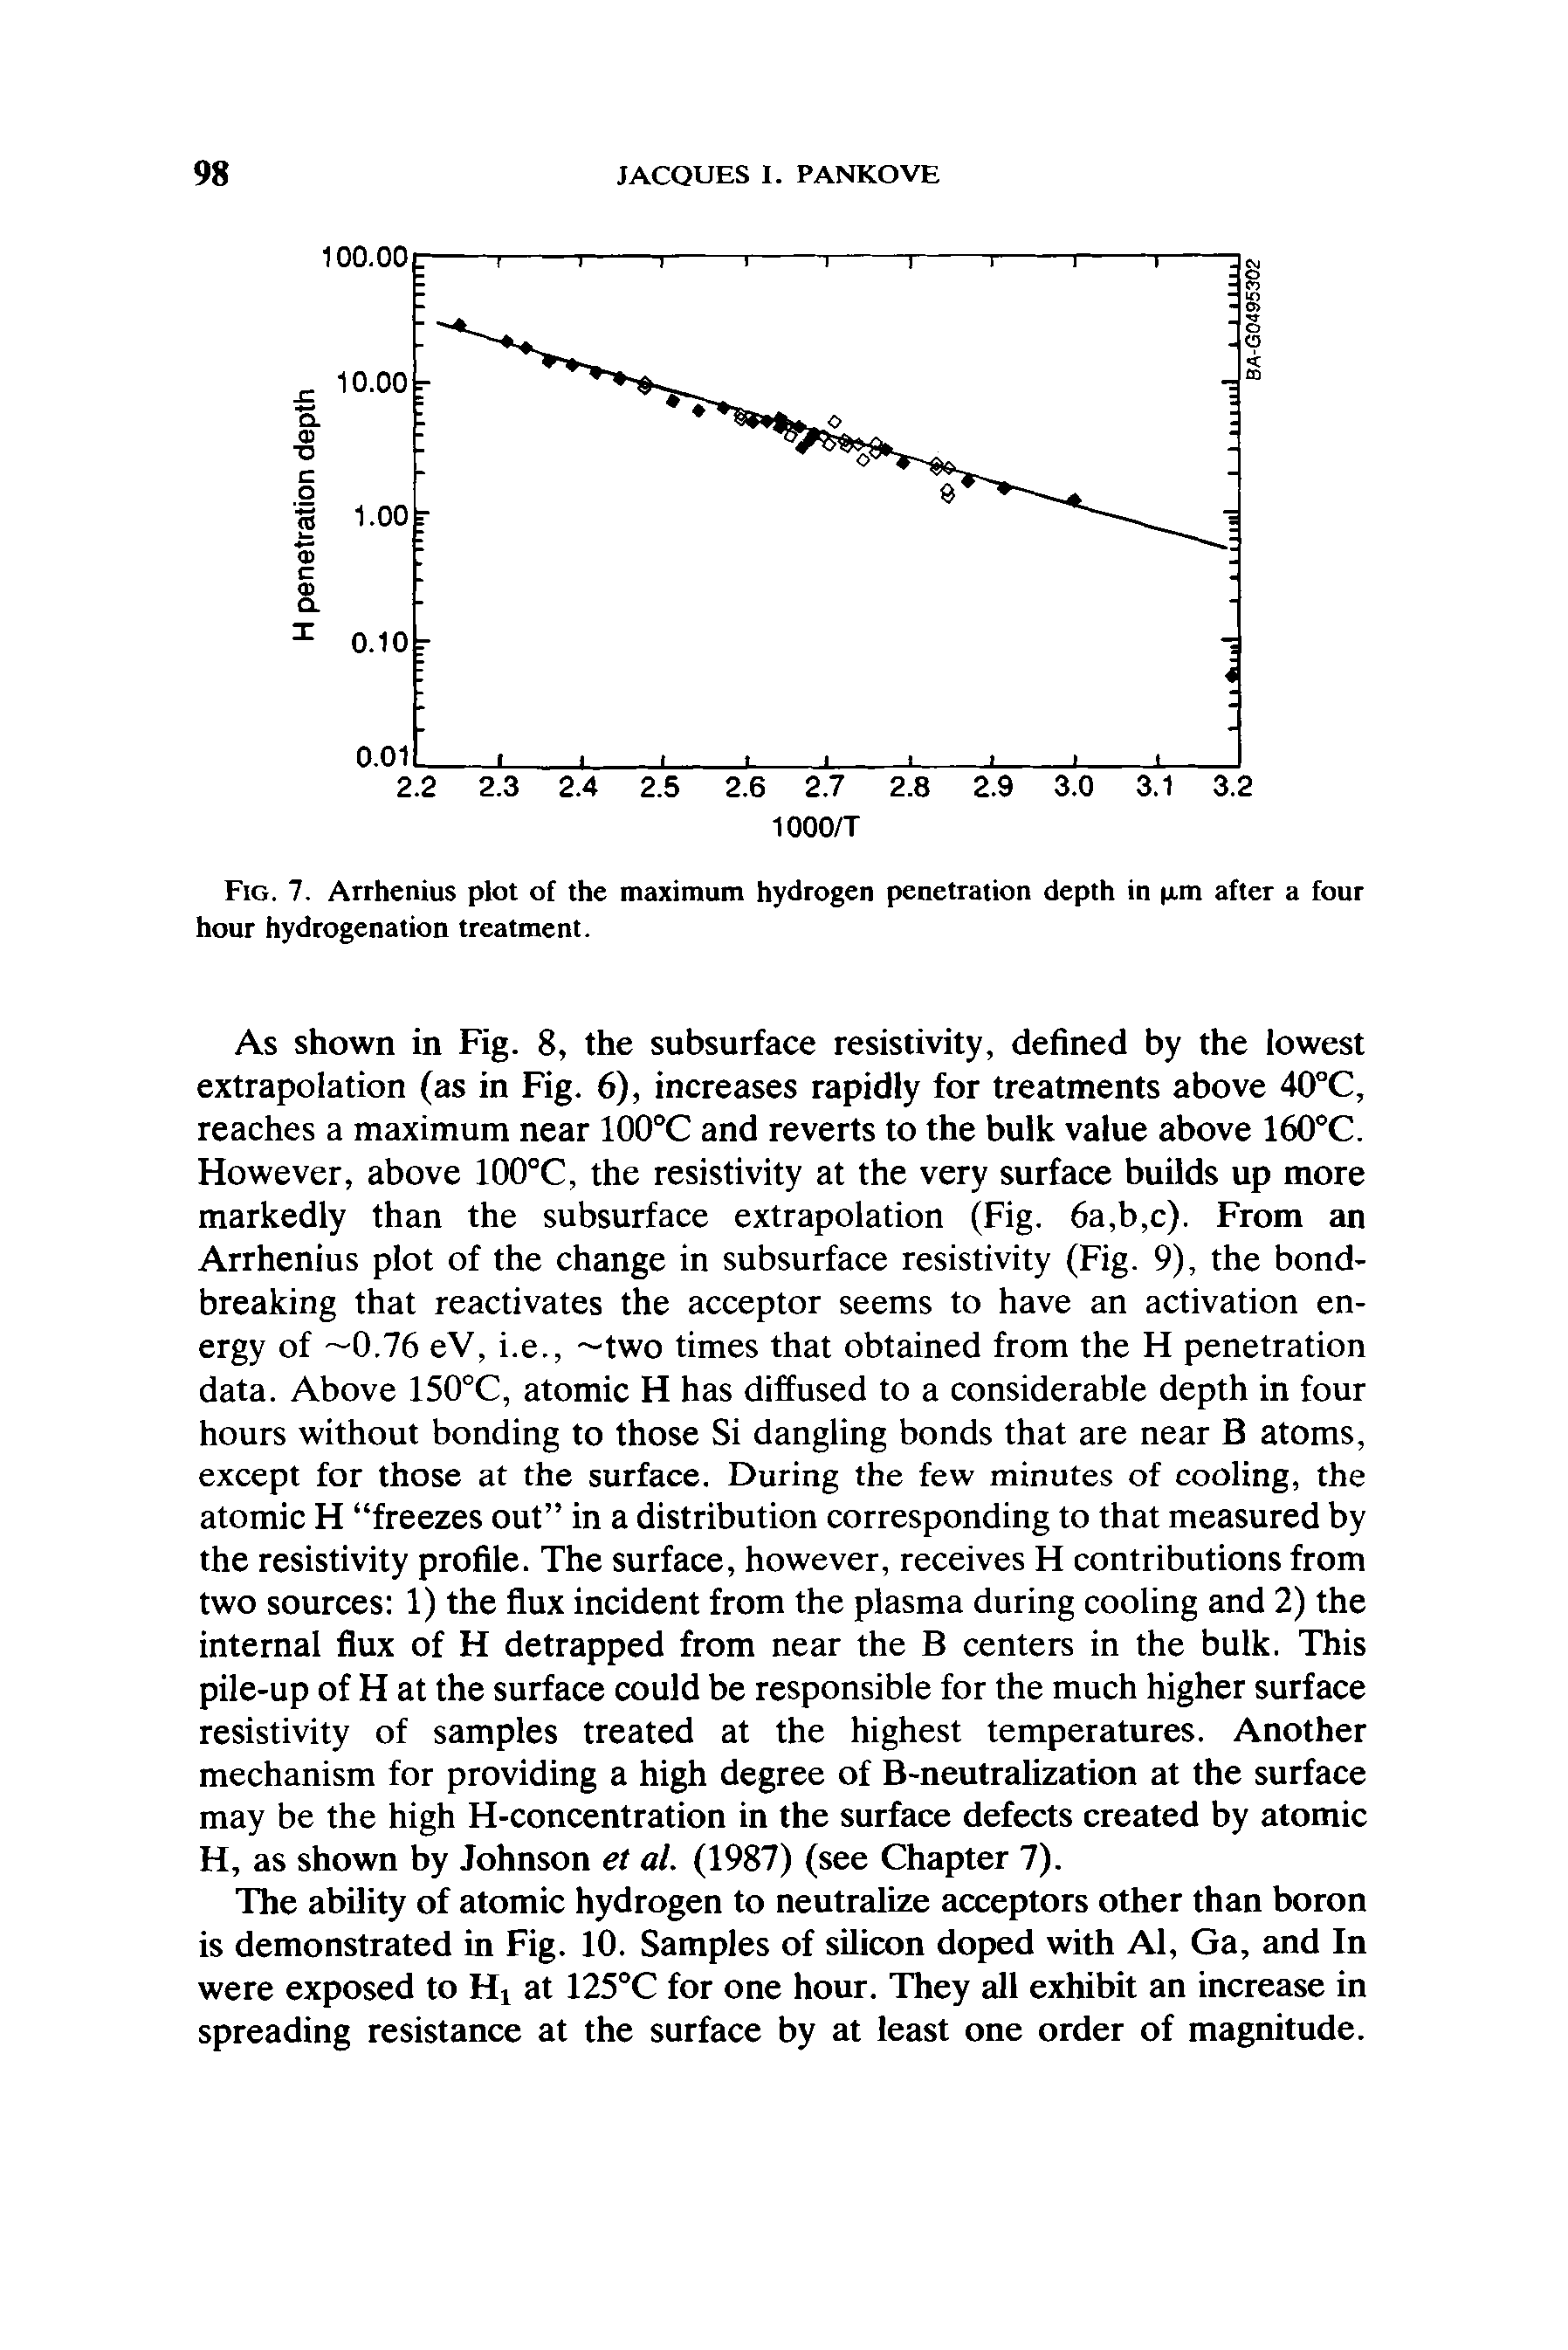 Fig. 7. Arrhenius plot of the maximum hydrogen penetration depth in xm after a four hour hydrogenation treatment.